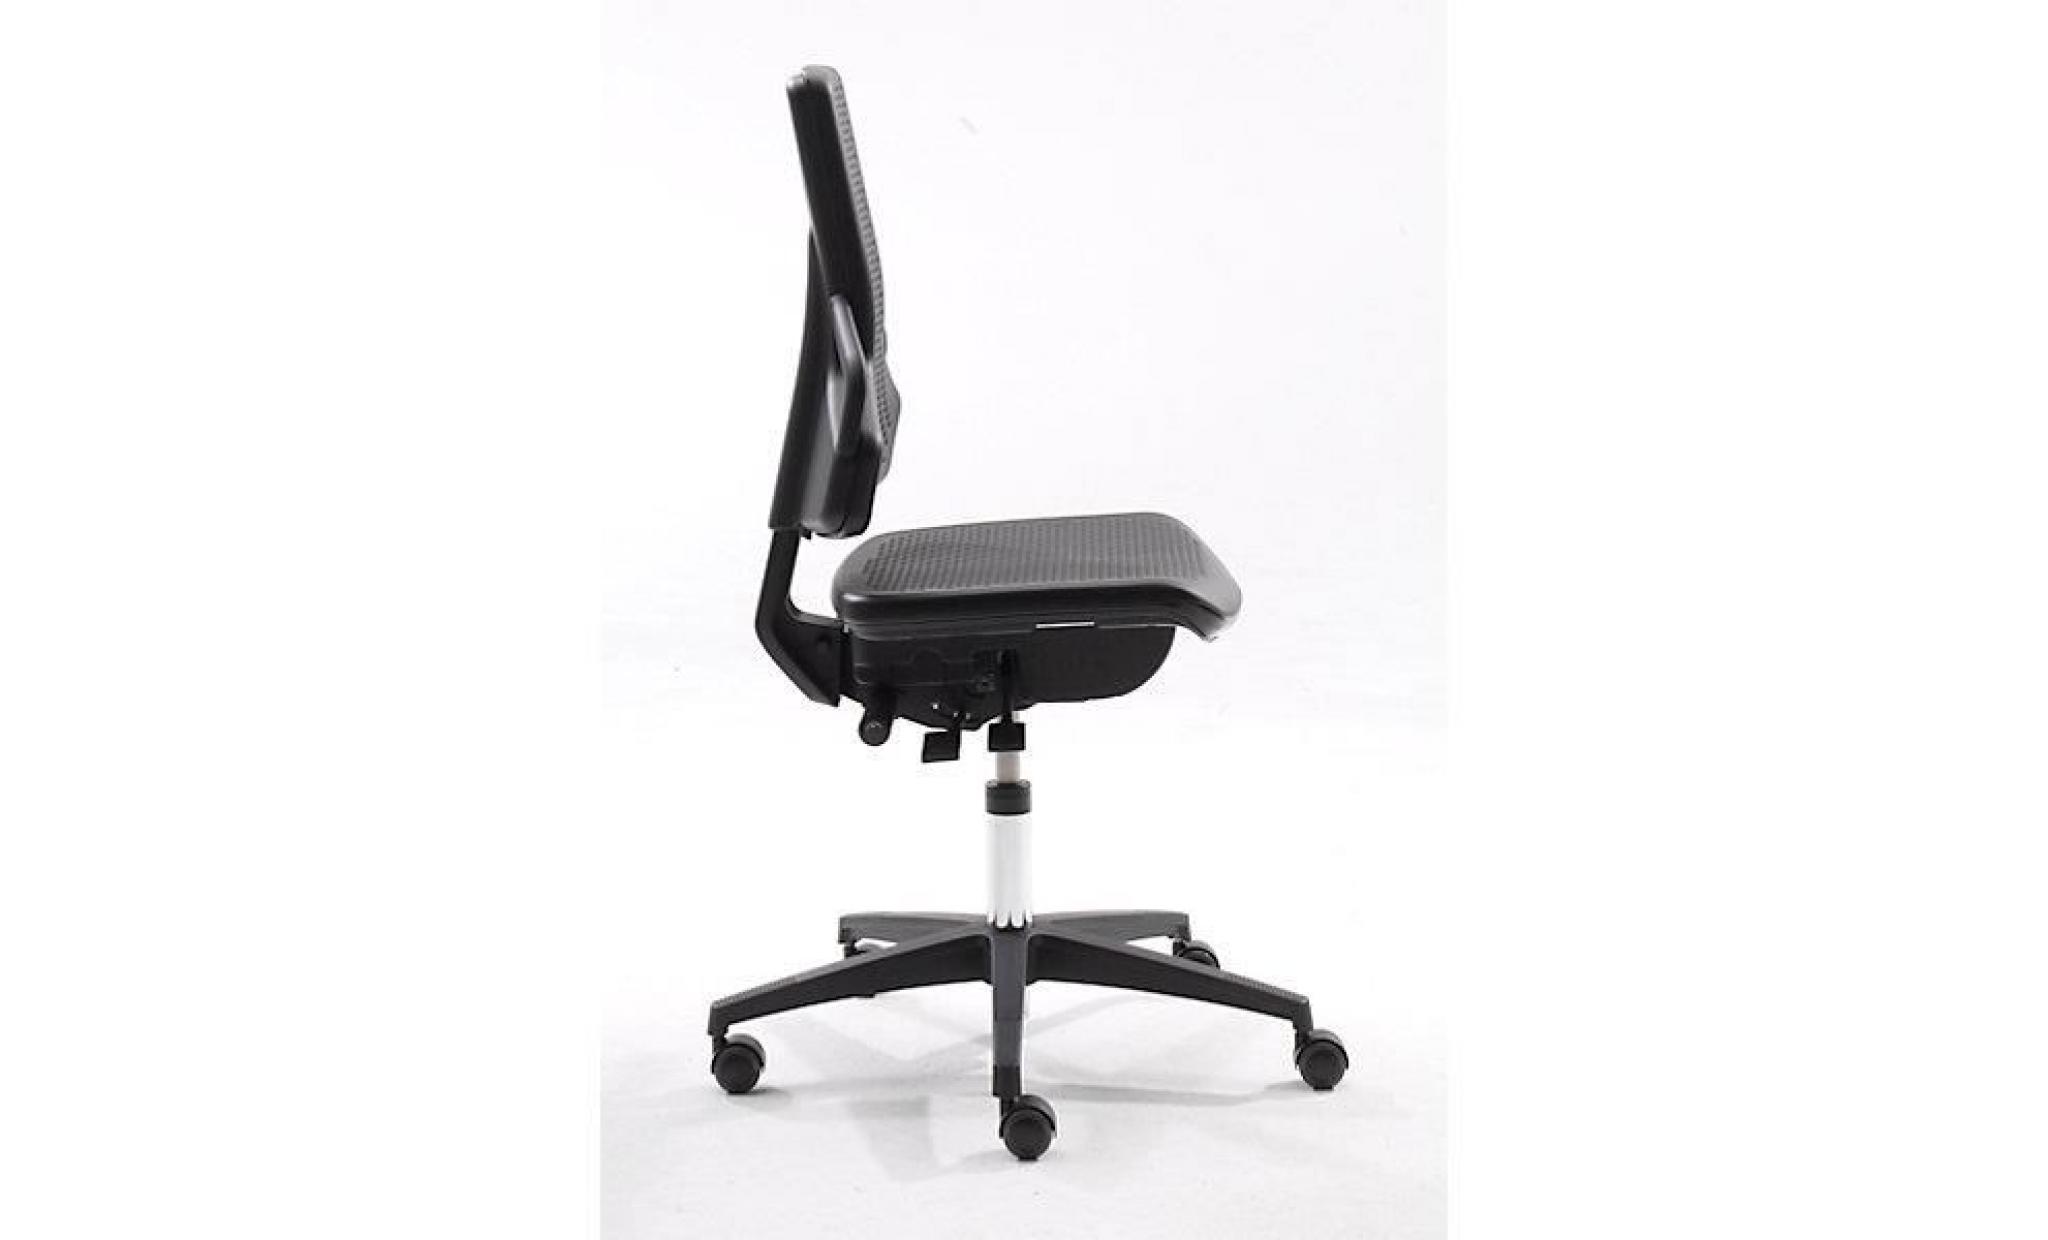 dauphin siège d'atelier   avec roulettes   habillage tissu anthracite   chaise chaises siège d'atelier siège pivotant sièges pas cher